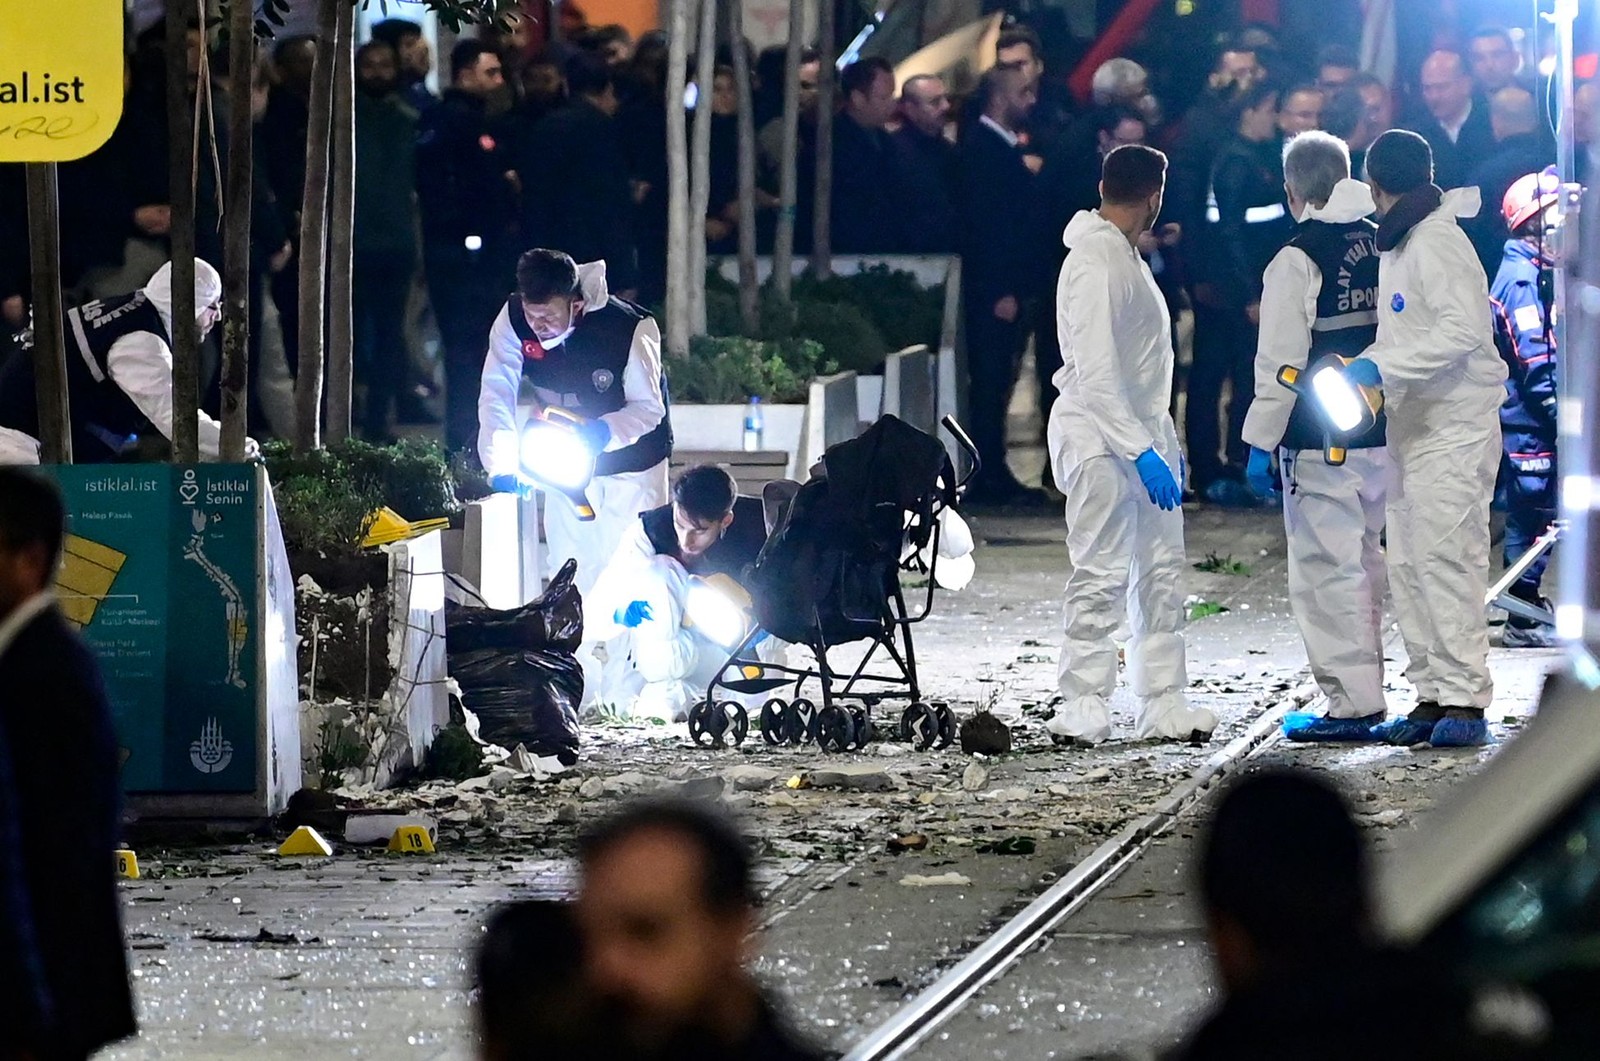 Peritos analisam local onde bomba foi detonada no centro de Istambul, Turquia. Seis pessoas morreram e mais de 50 foram feridas  — Foto: Yasin Akgul/AFP